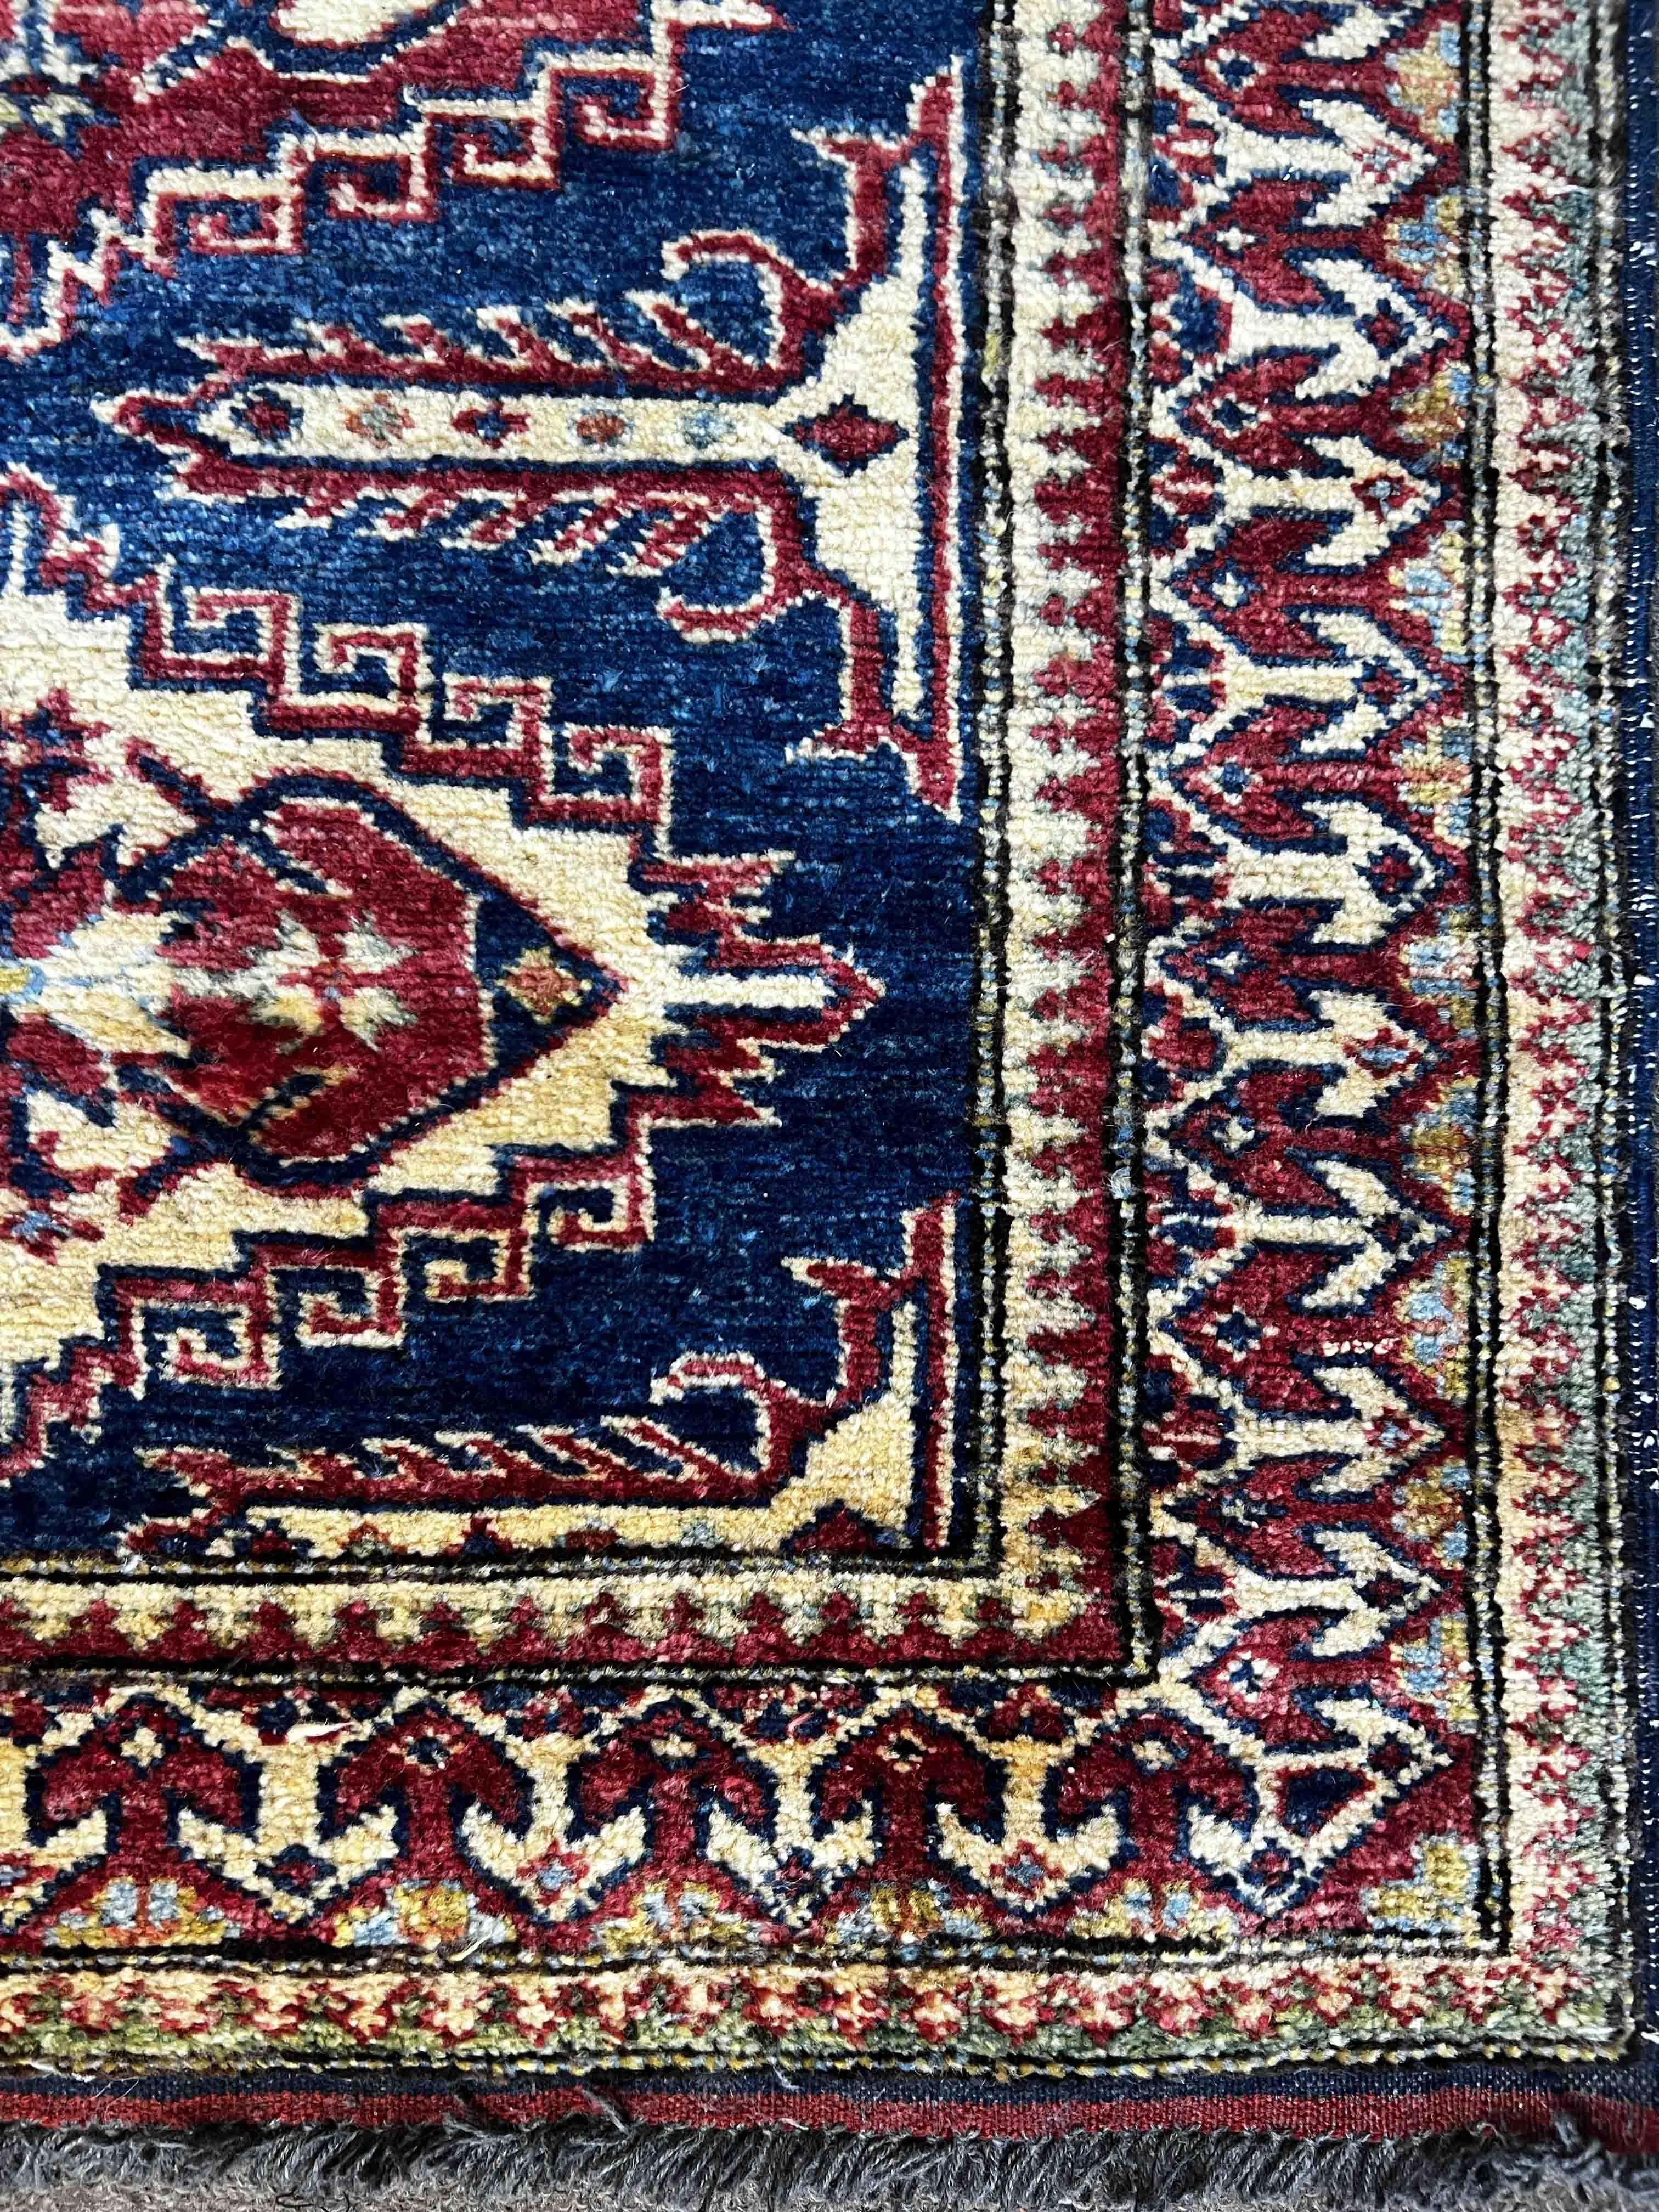 Sehr schöner kaukasischer Teppich aus dem 20. Jahrhundert - n° 1182

Dank unserer Restaurierungs- und Konservierungswerkstatt und unserem Know-how, 
freuen wir uns, Ihnen Kunstwerke aus Stoff wie die Tapisserie vorzustellen, 
Teppiche und